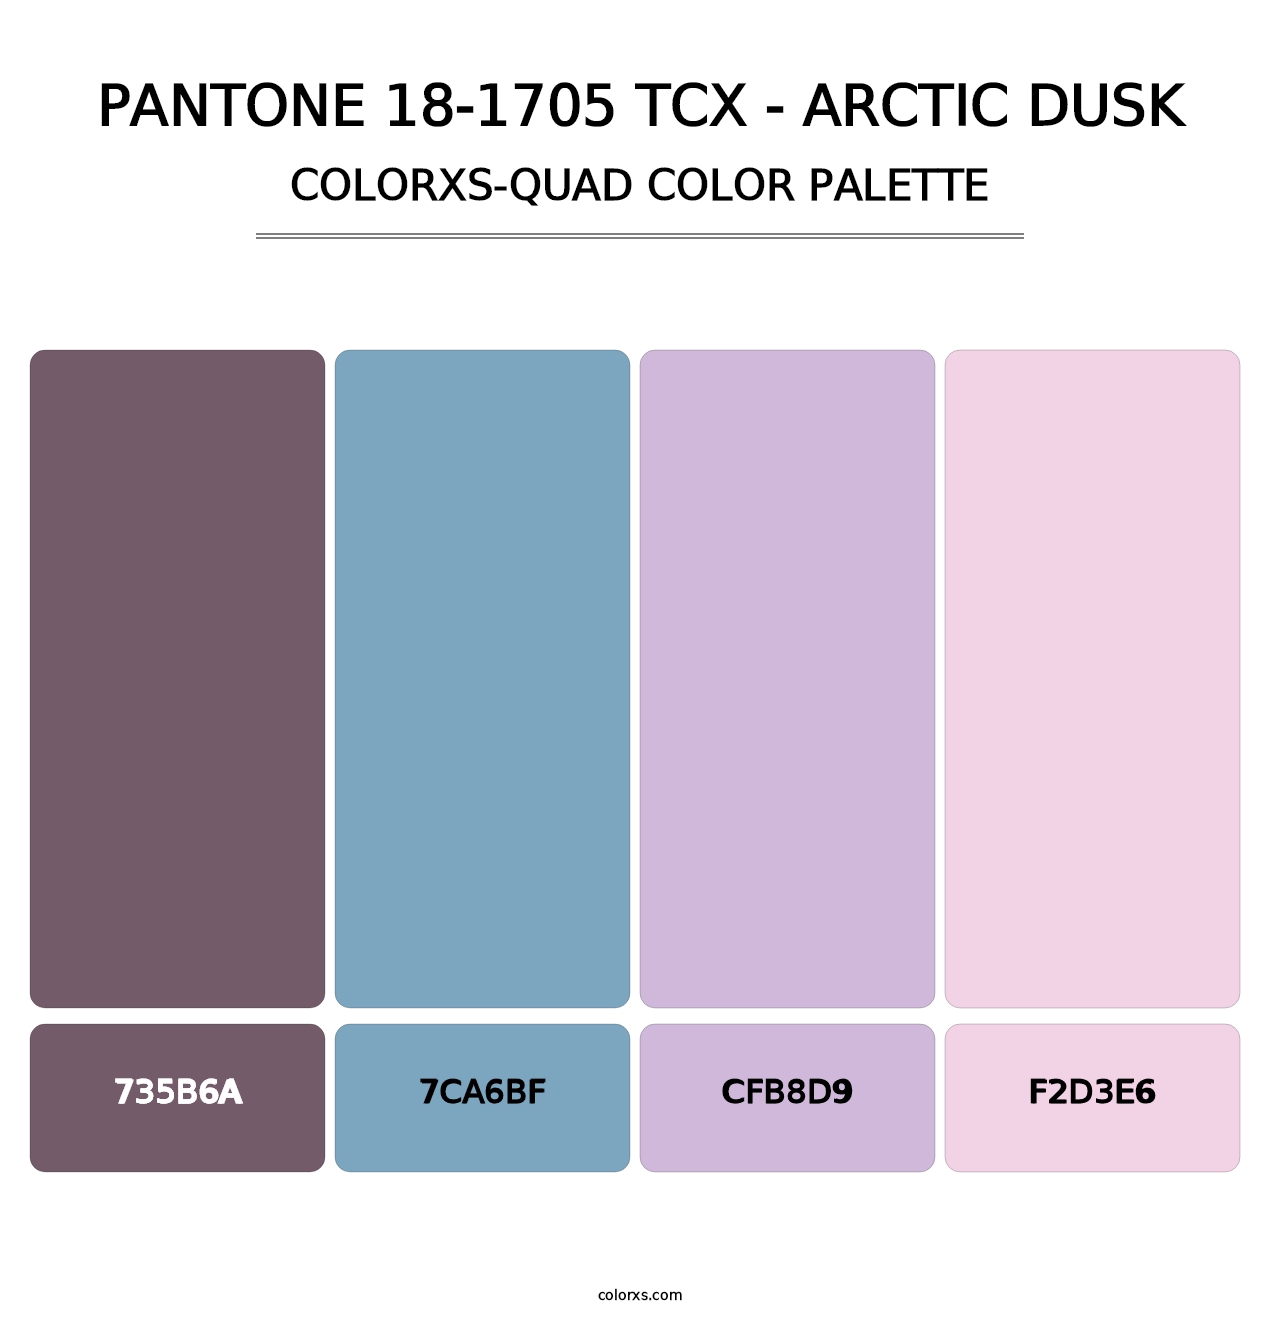 PANTONE 18-1705 TCX - Arctic Dusk - Colorxs Quad Palette